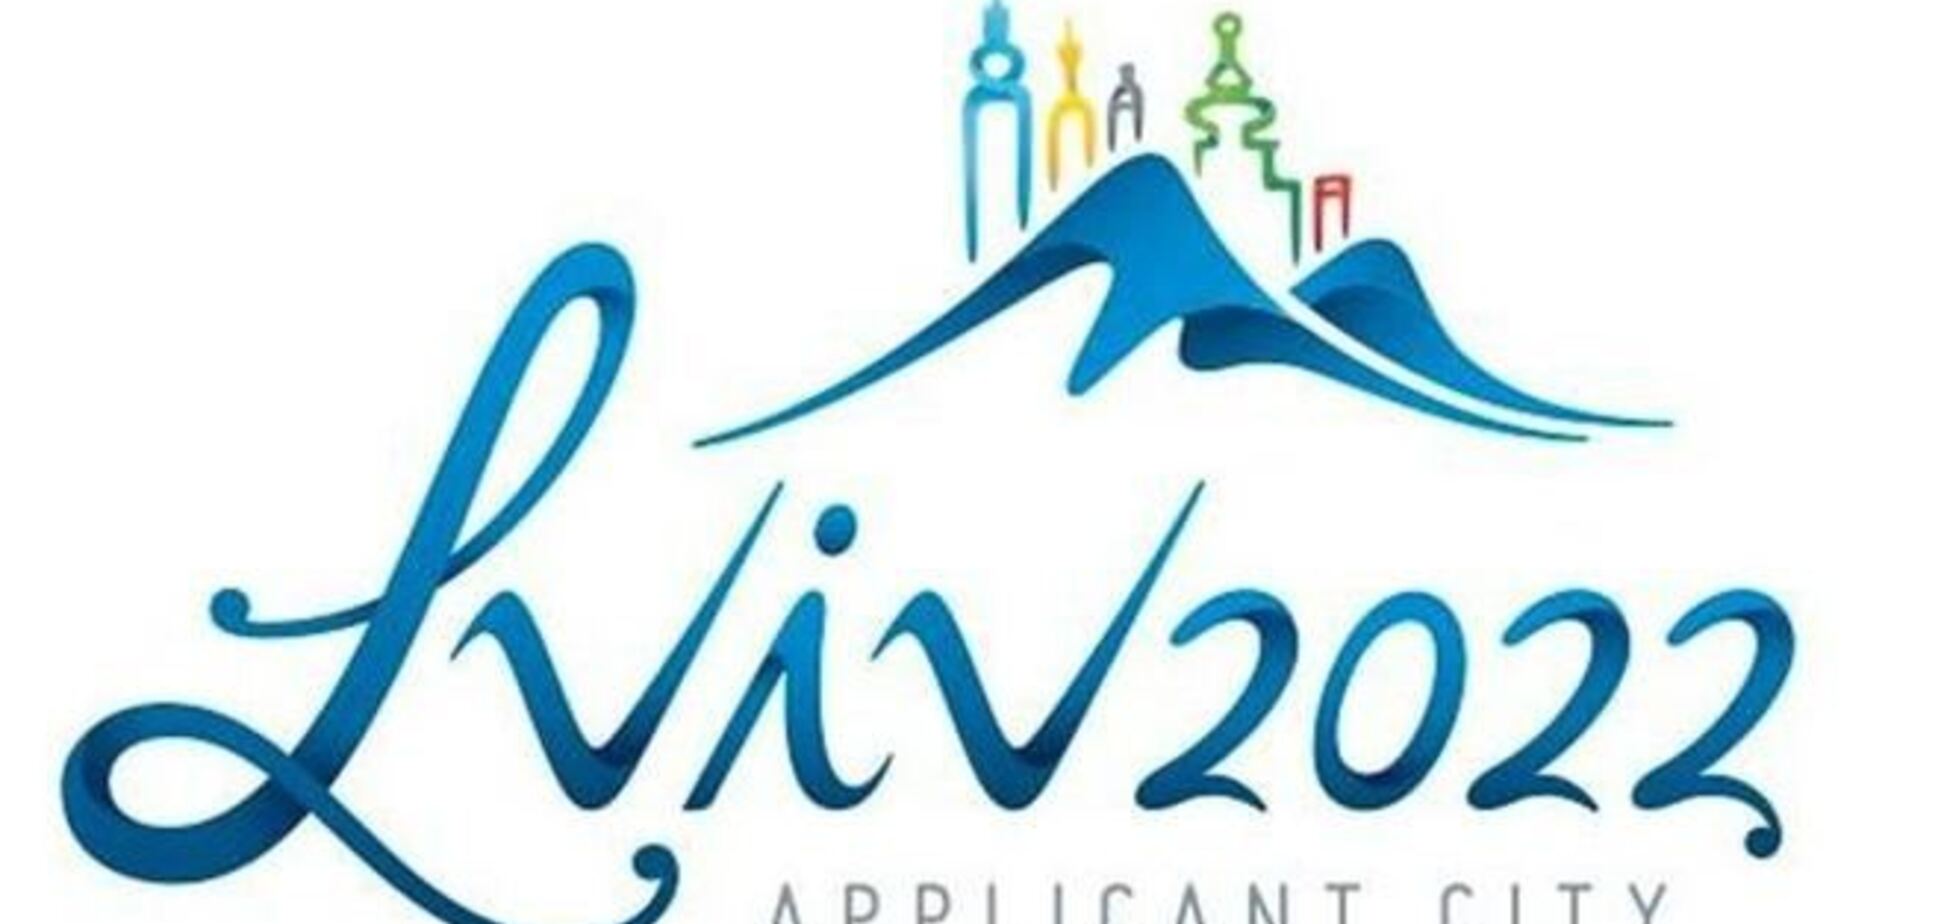 Выбран логотип заявки Львова на Олимпиаду-2022